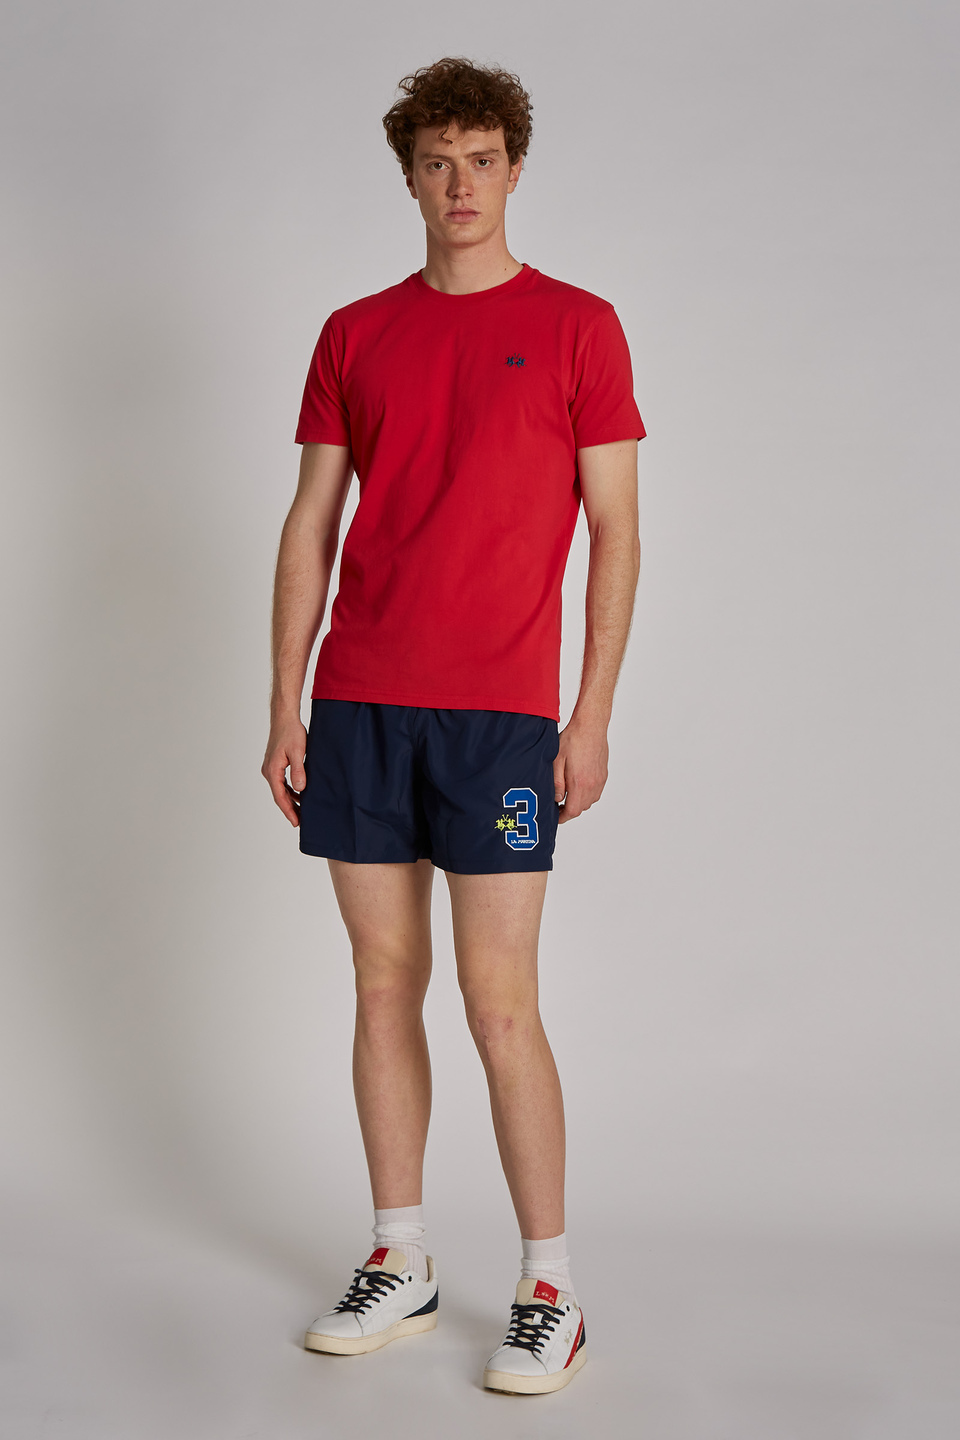 Regular-fit drawstring-embellished nylon swim shorts | La Martina - Official Online Shop